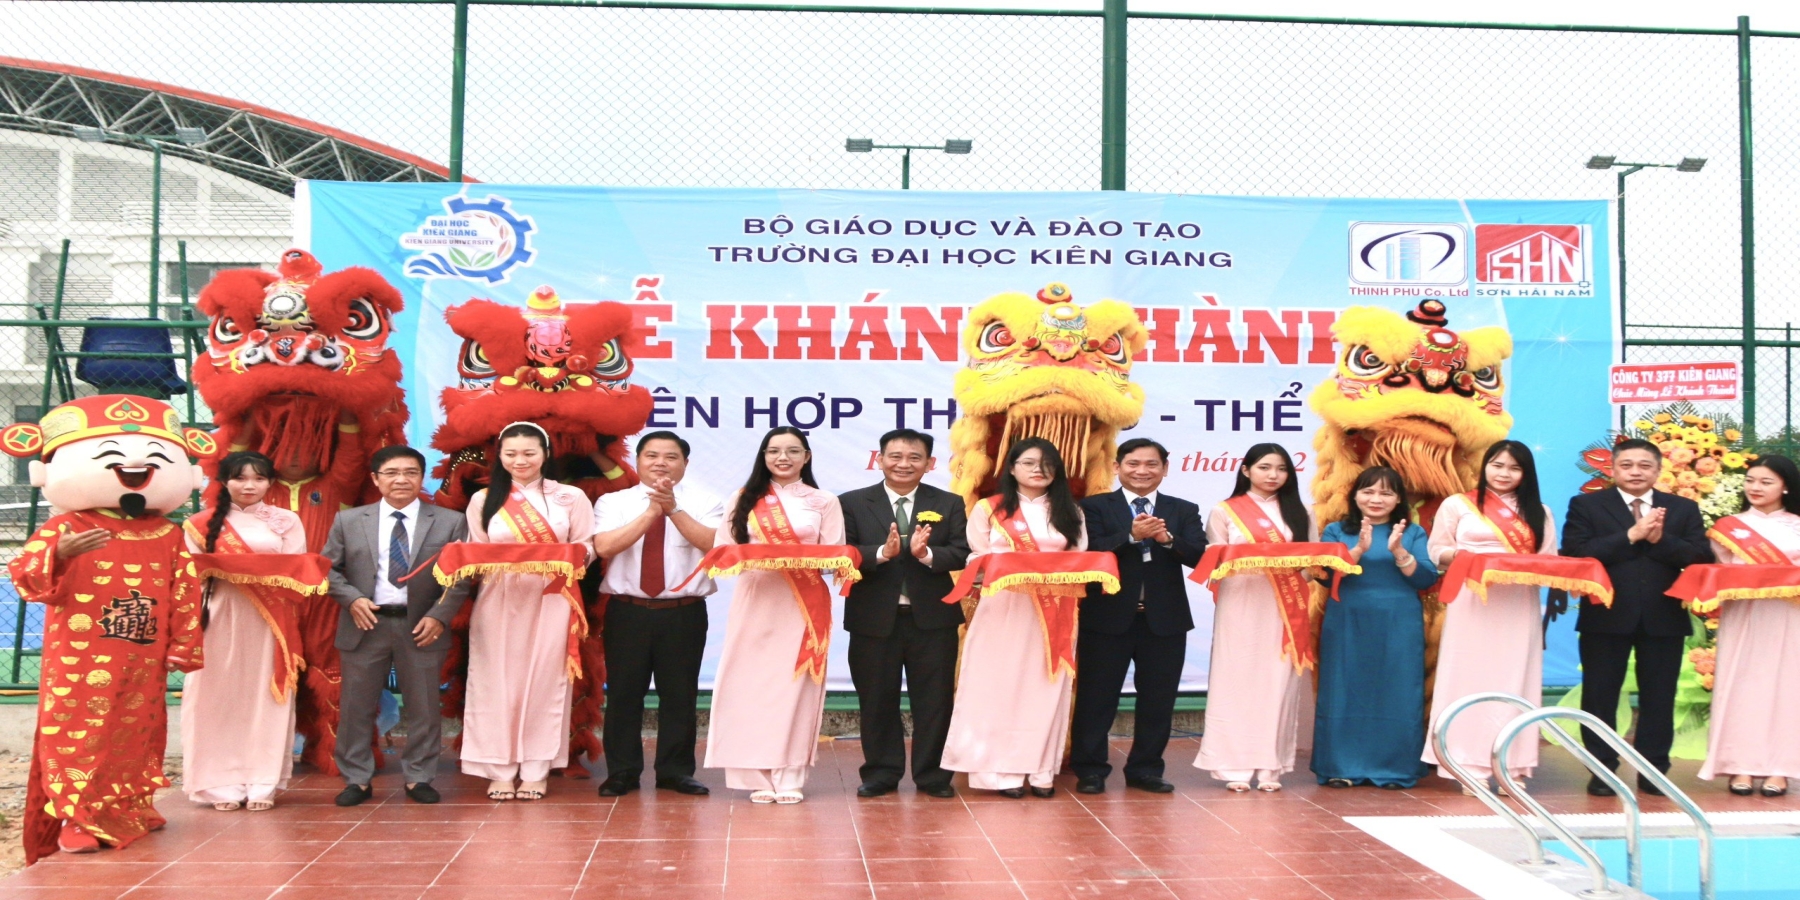 Trường Đại học Kiên Giang khánh thành khu liên hợp thể dục thể thao 